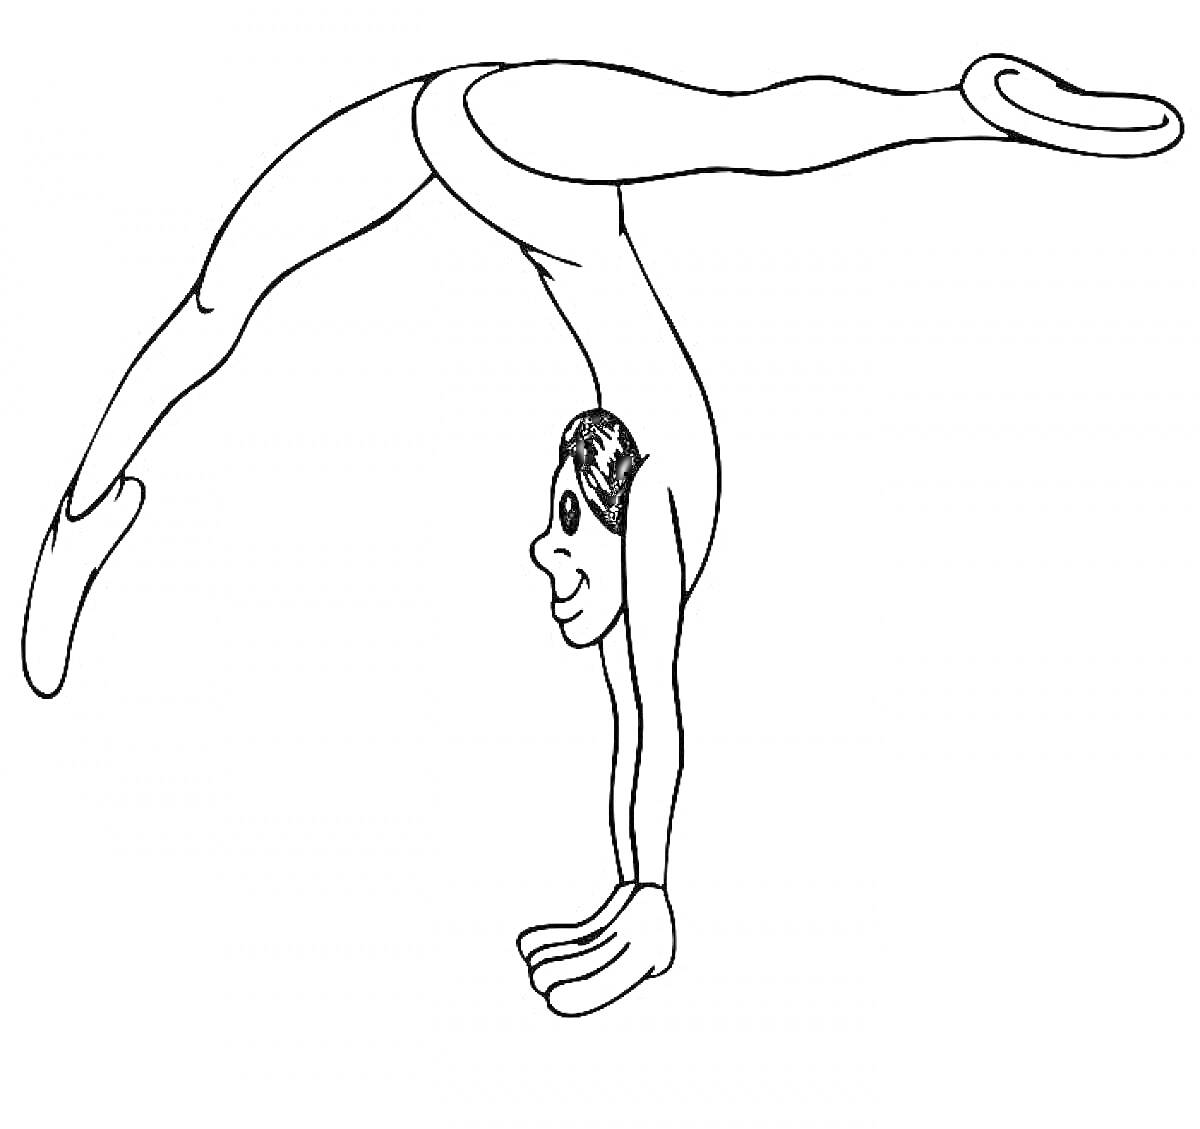 Гимнастка, выполняющая стойку на руках с разведенными в стороны ногами